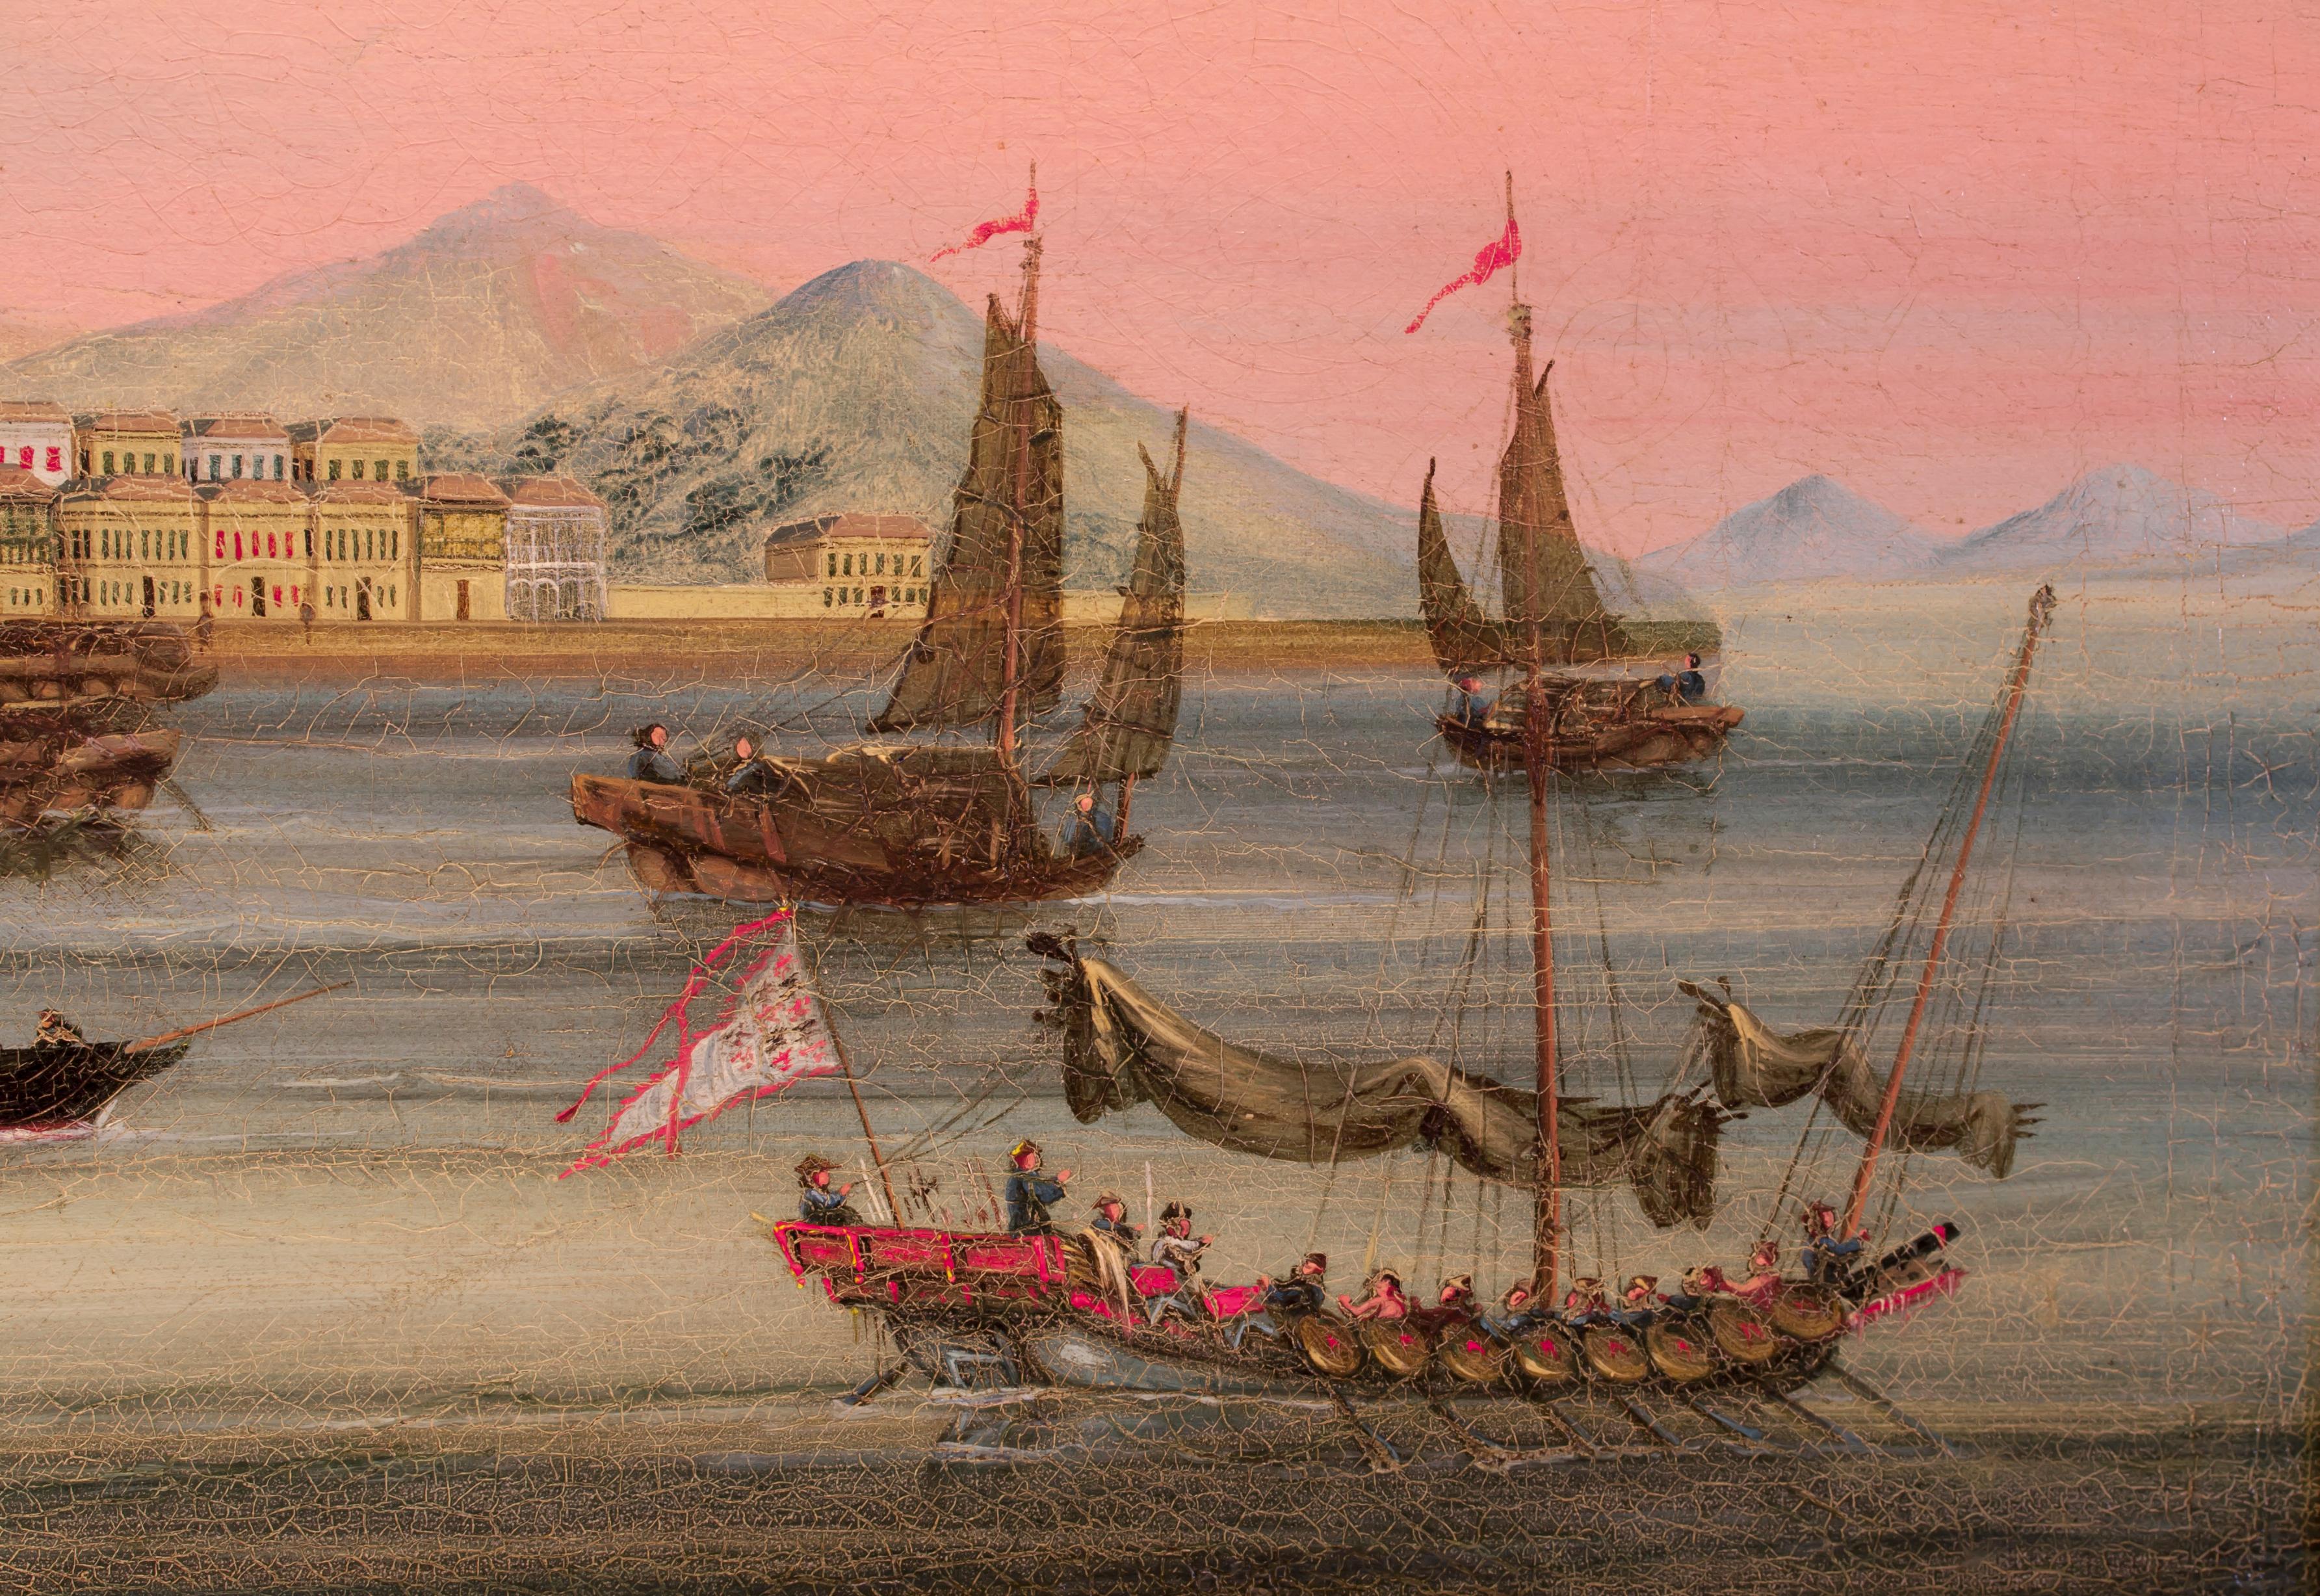 Die ältesten europäischen Gebäude in China befinden sich entlang des sichelförmig geschwungenen Ufers des Praya Grande, wo die portugiesischen Entdecker ihren Handelsstützpunkt mit einem ganzen Kontinent errichteten und befestigten. Als sie 1553